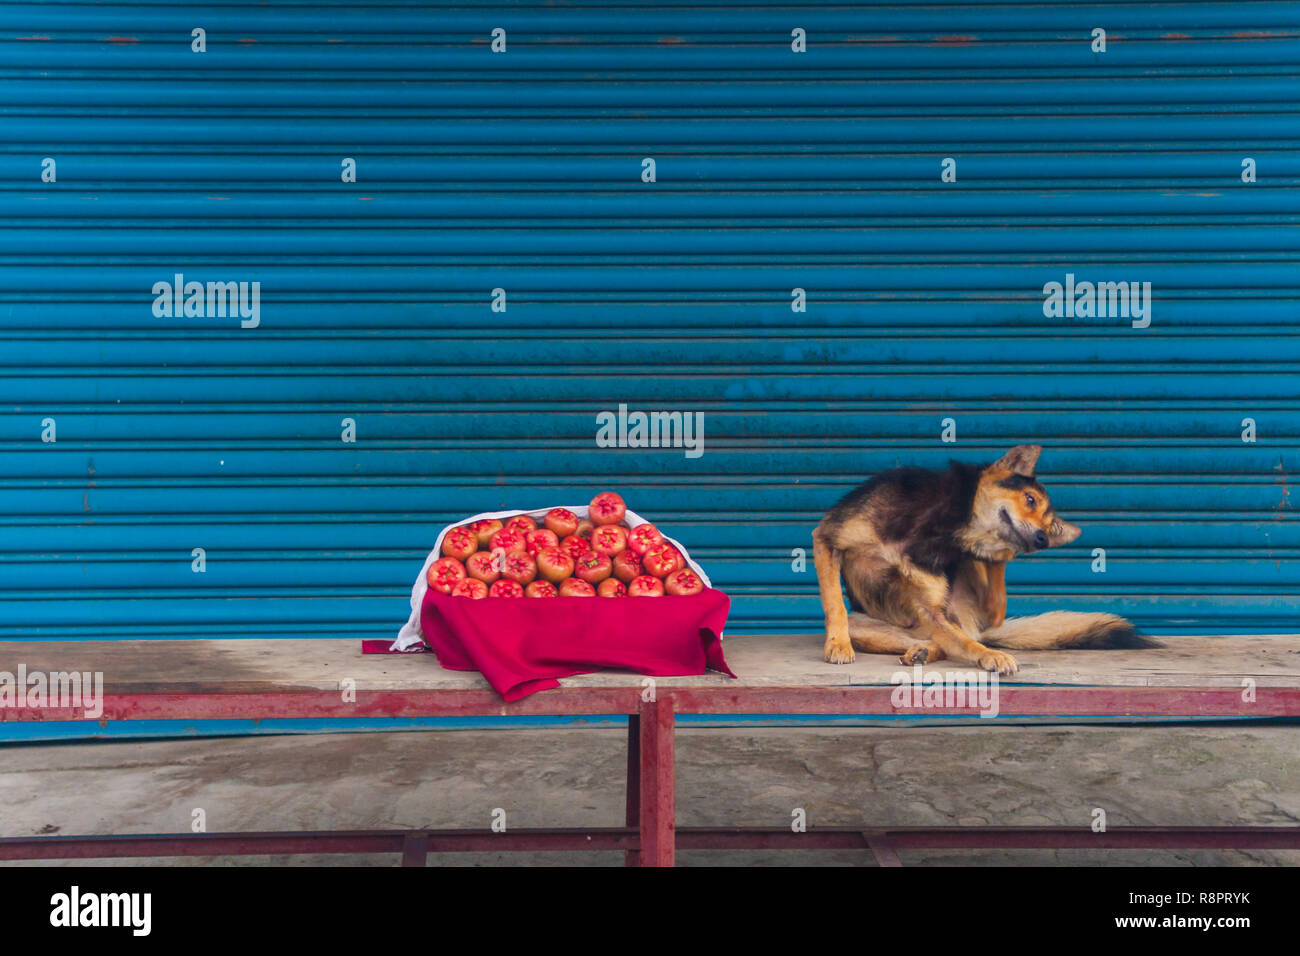 Dog And Fruit Stock Photo